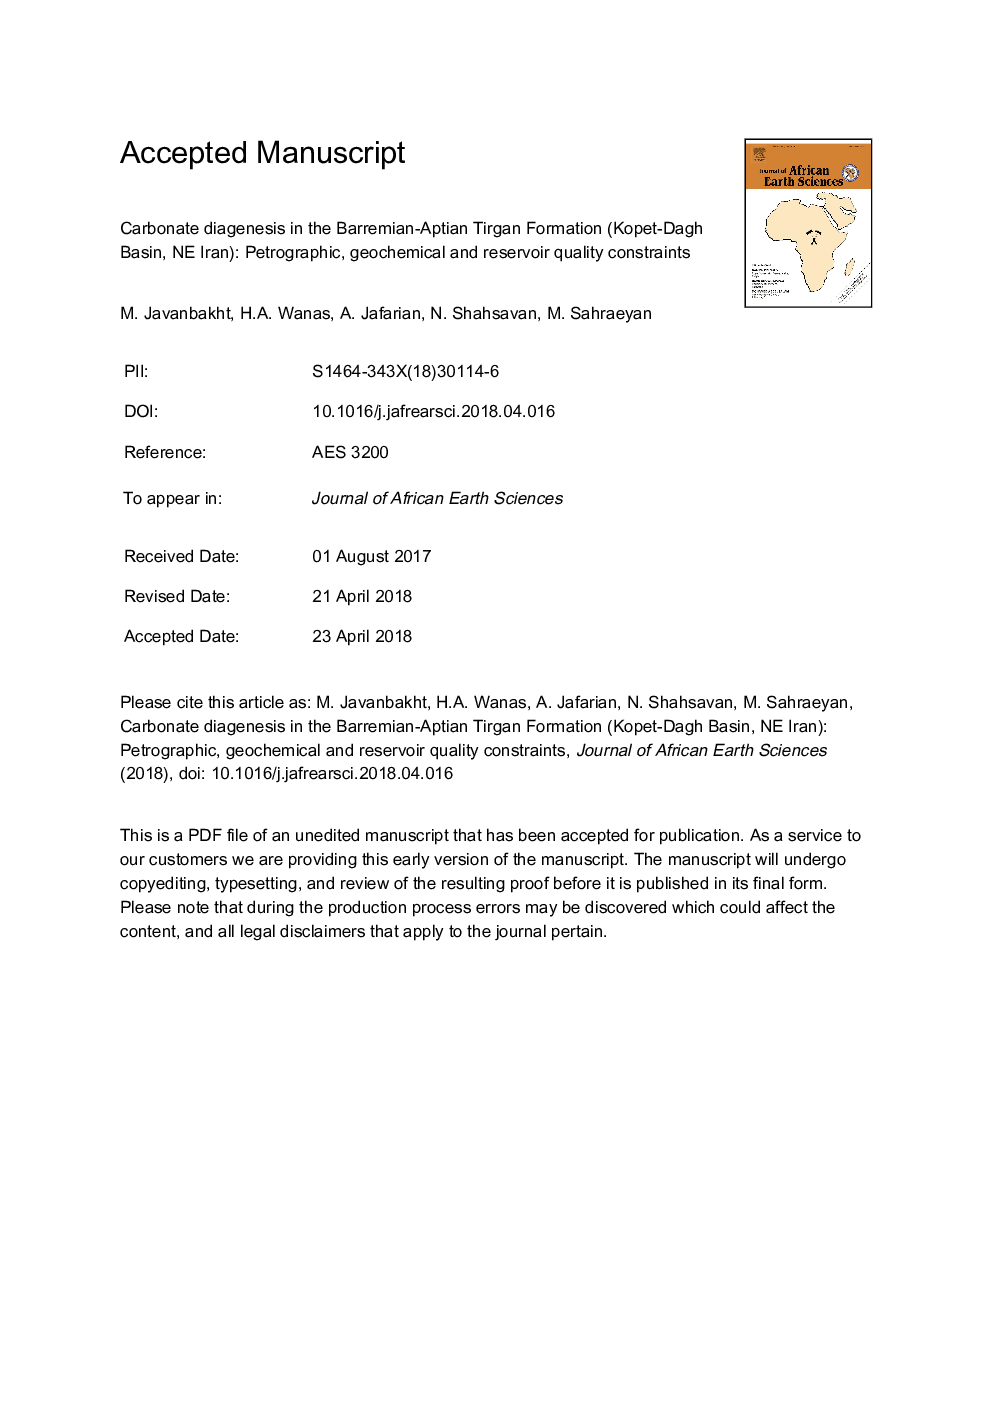 دیگنز کربنات در سازند باریمیه-آپتیان تیرگان (حوضه کپه داغ، شمال غربی ایران): محدودیت های کیفیت پتروگرافی، ژئوشیمیایی و مخزن